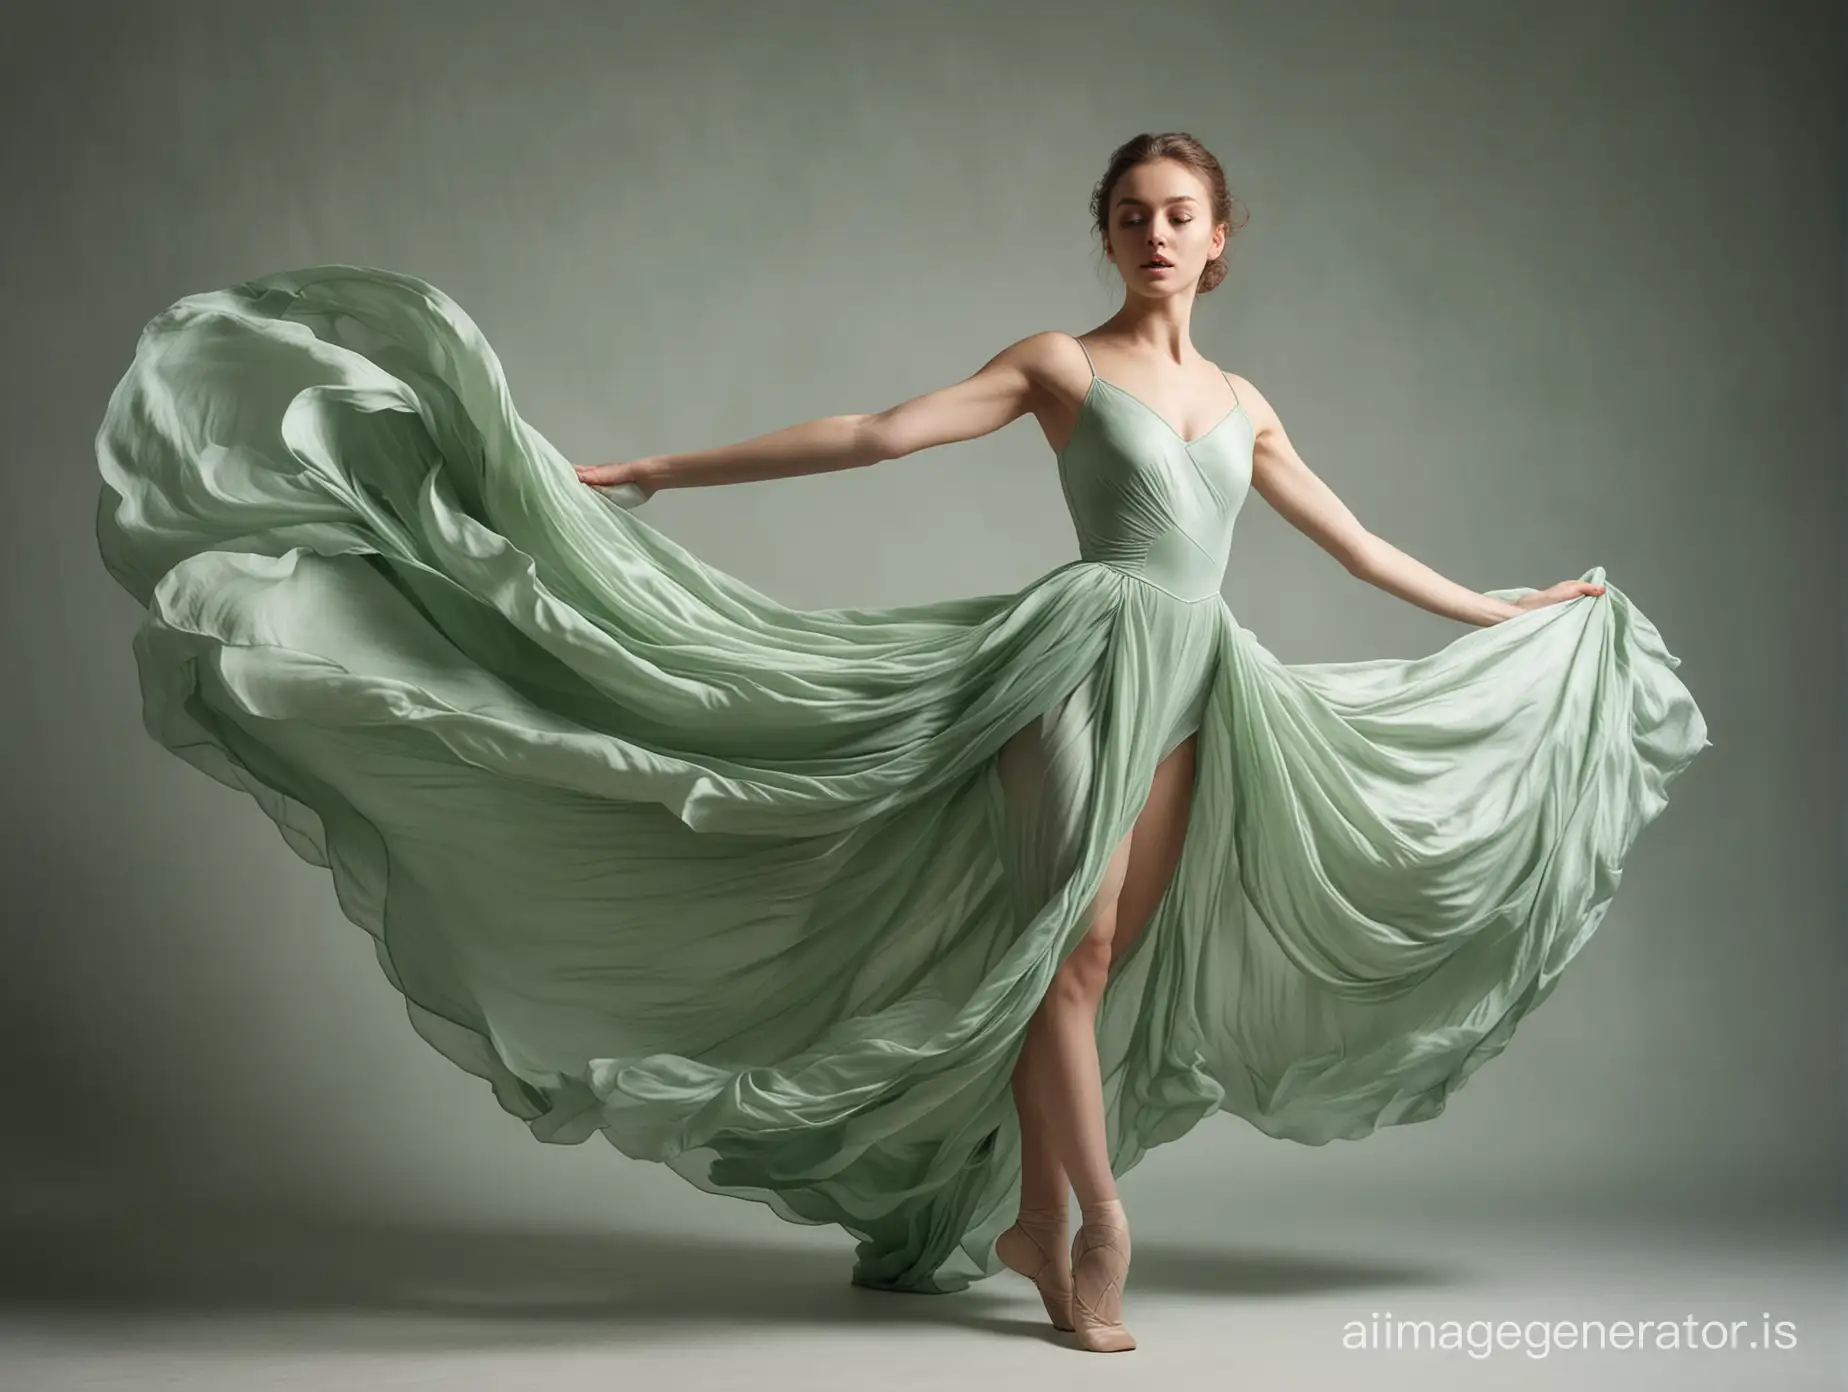 Молодая красивая балерина в балетном прыжке grand jete, шпагат в воздухе, полный рост, на ней длинное платье, муза искусства, окруженная большим количеством струящейся шелковой ткани нежно-зеленого цвета, ткань окружает ее со всех сторон, она словно купается в складках ткани, сложные складки, динамичная поза, первичная энергия, высокое разрешение, модная фотосессия, Лаокоон, сложное освещение